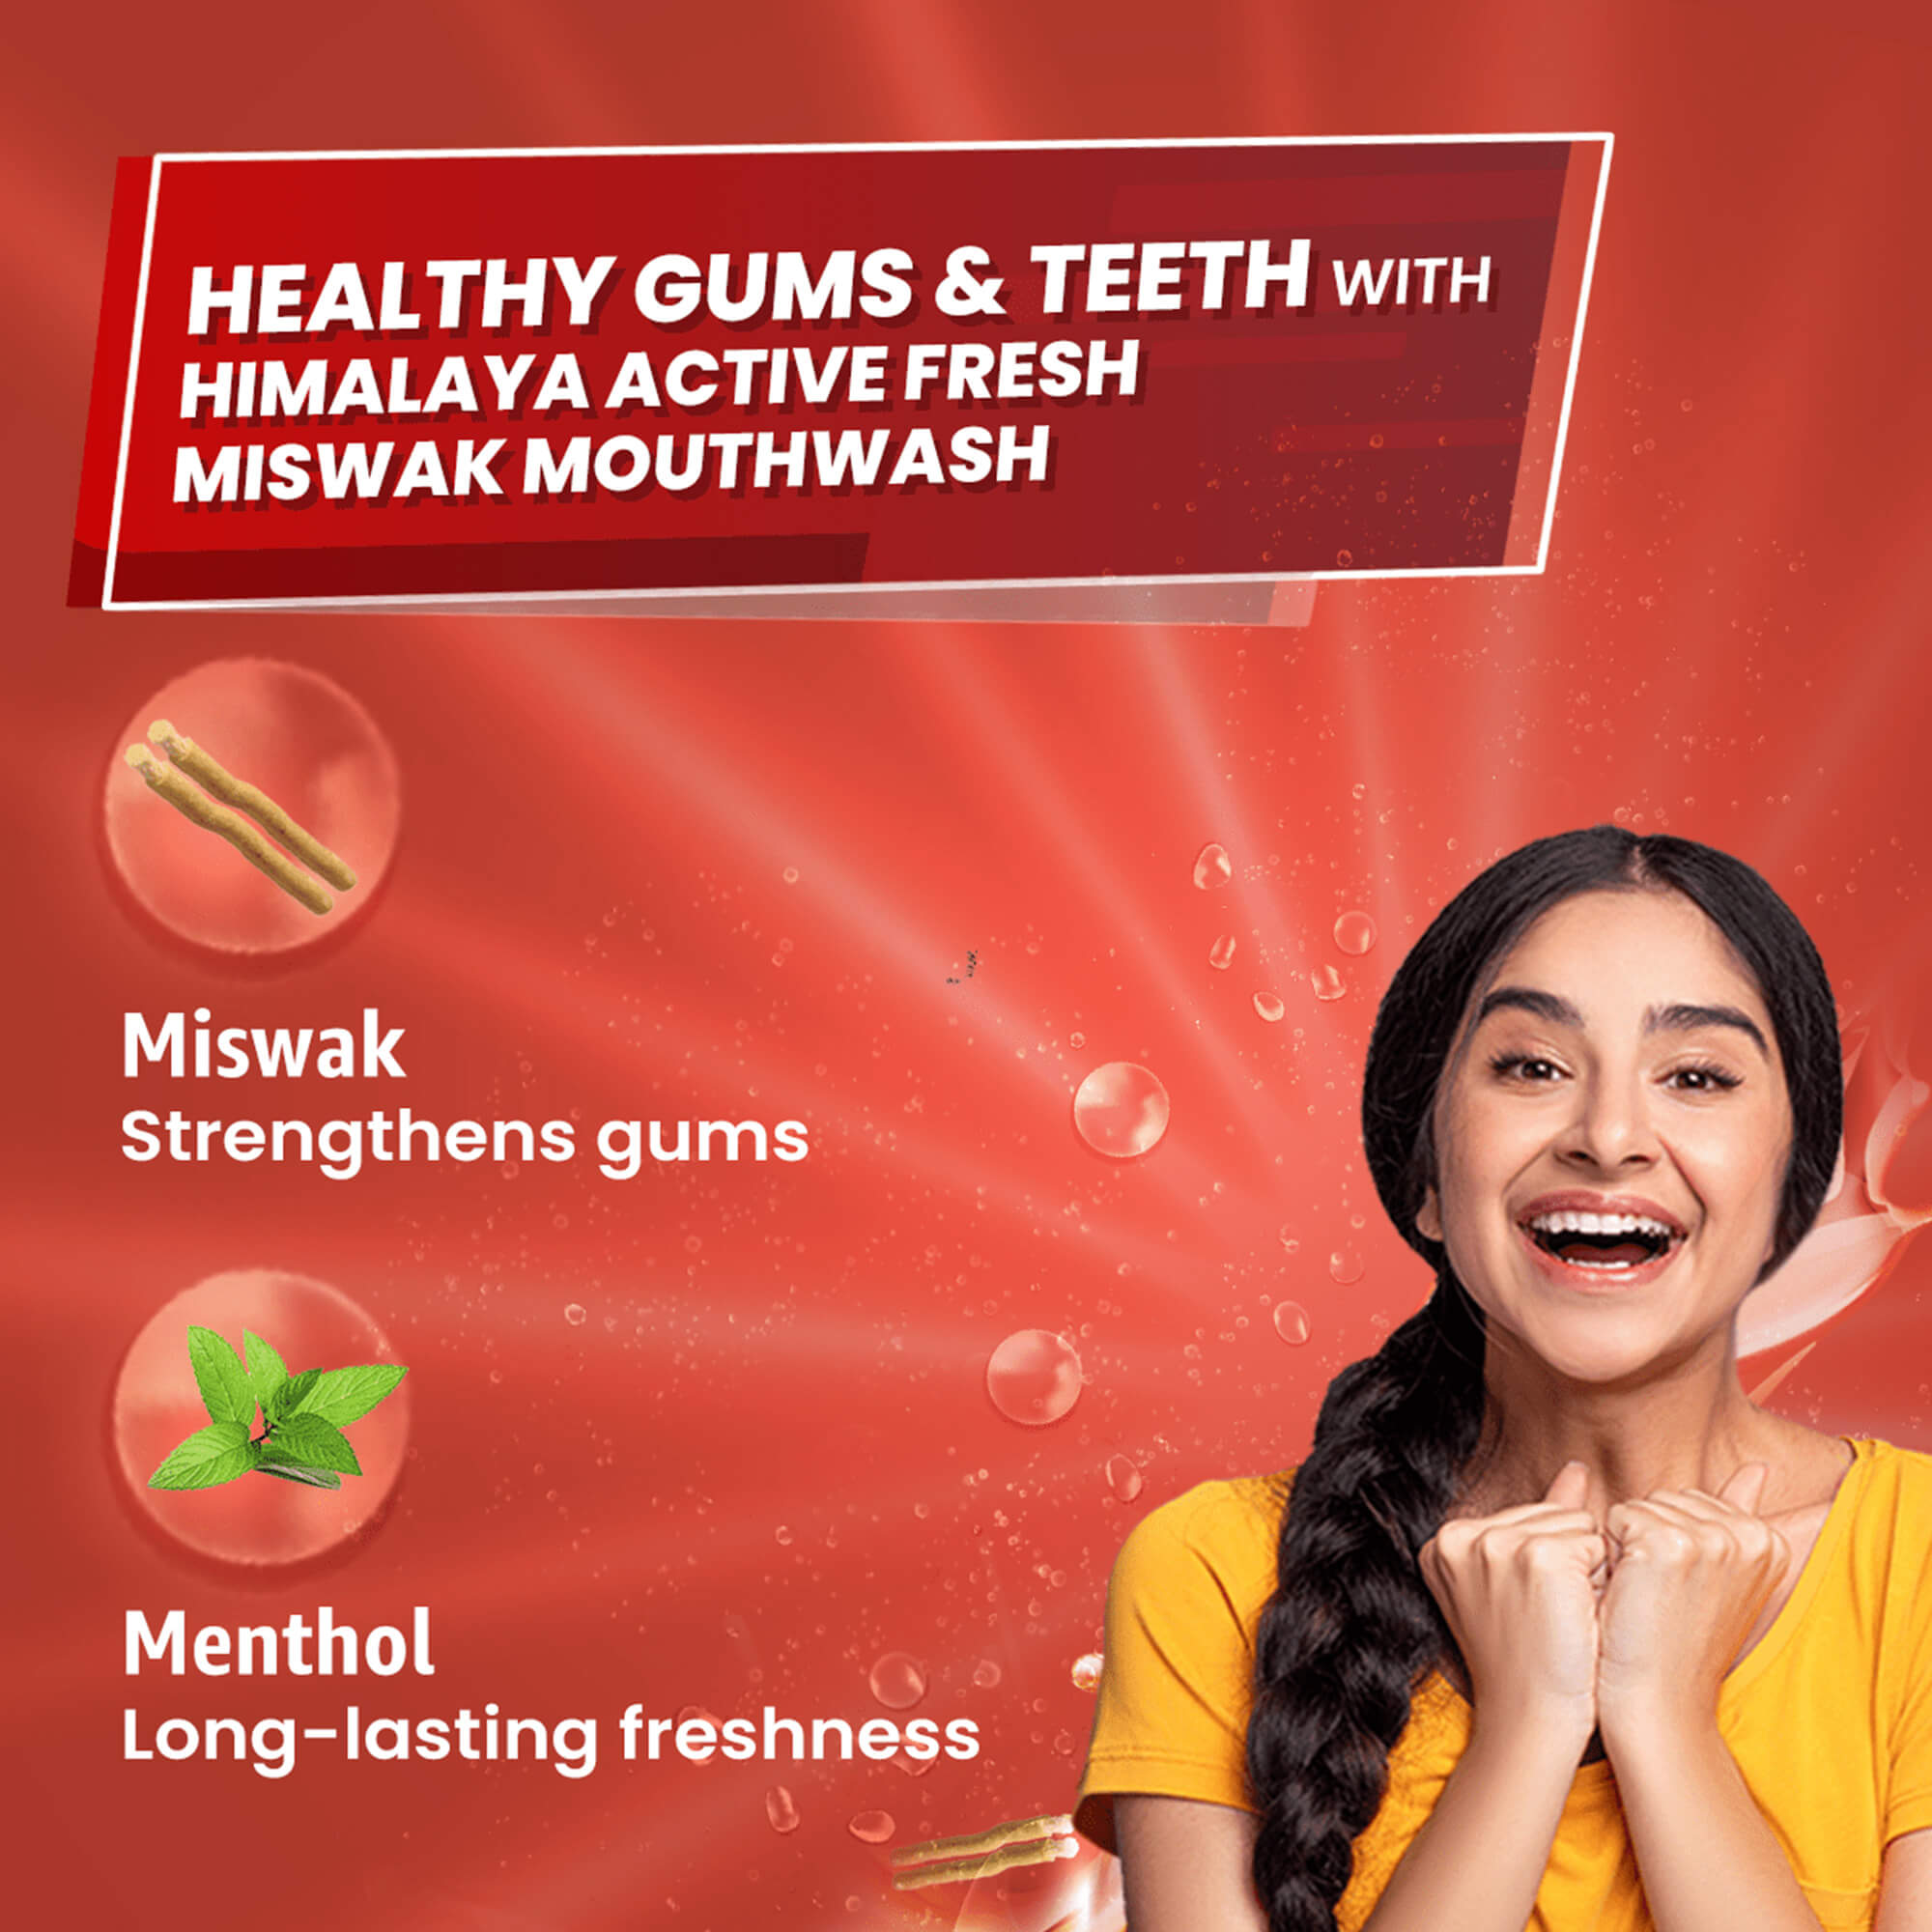 Himalaya Active Fresh Miswak Mouthwash Benefits